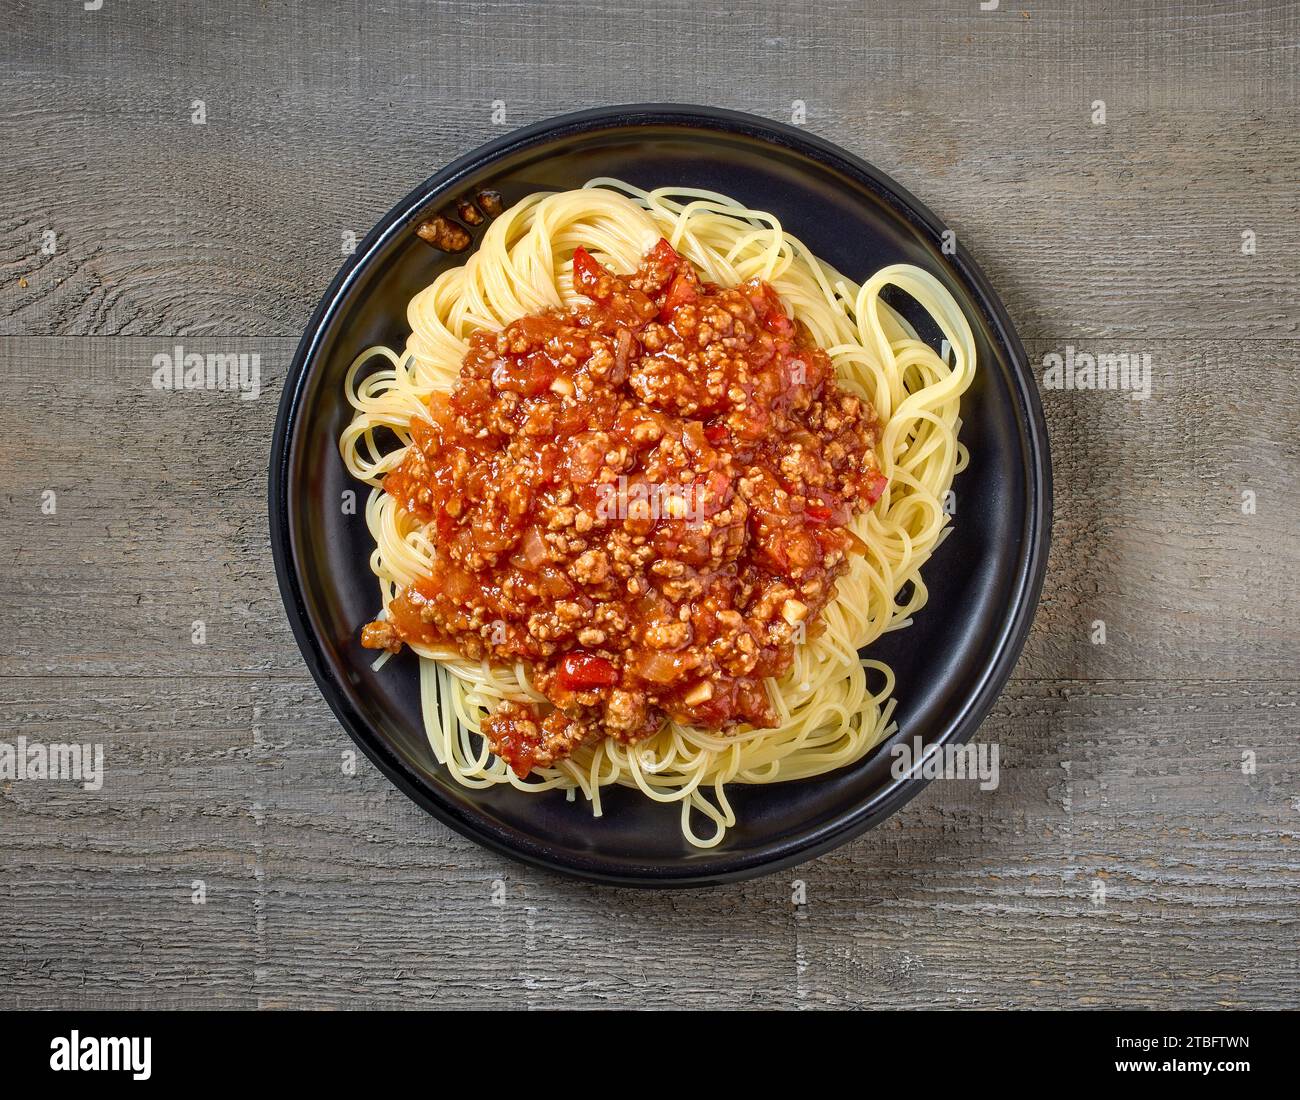 Teller mit Pasta-Spaghetti mit Bolognese-Sauce auf hölzernem Küchentisch, Blick von oben Stockfoto